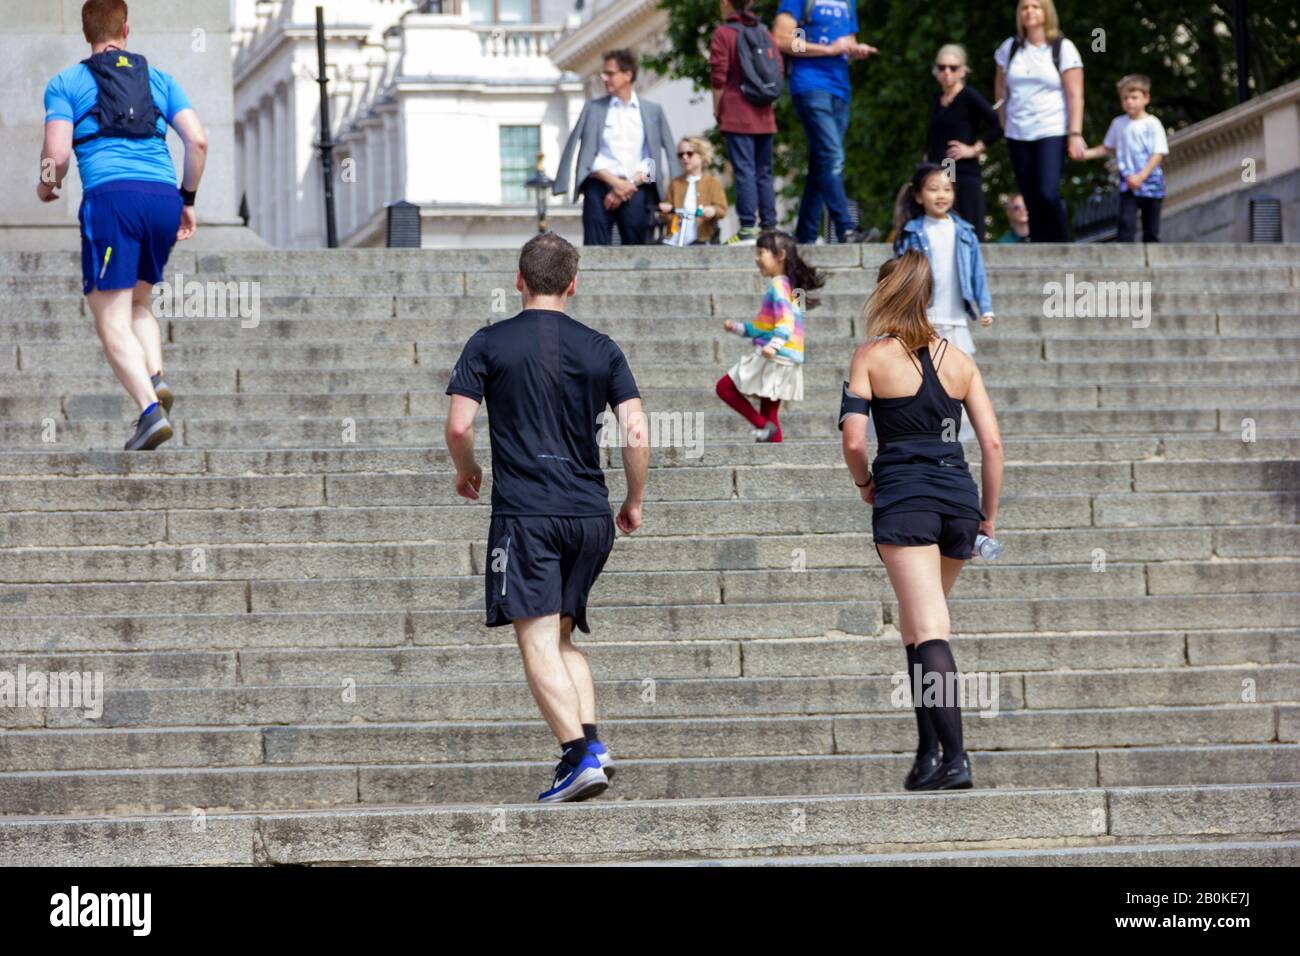 Londres/Angleterre - 26 mai 2019 : portrait d'un coureur mâle et d'une femelle, courrant dans les escaliers du centre-ville de Londres pendant la course vitalité de Londres à 10 km. Banque D'Images